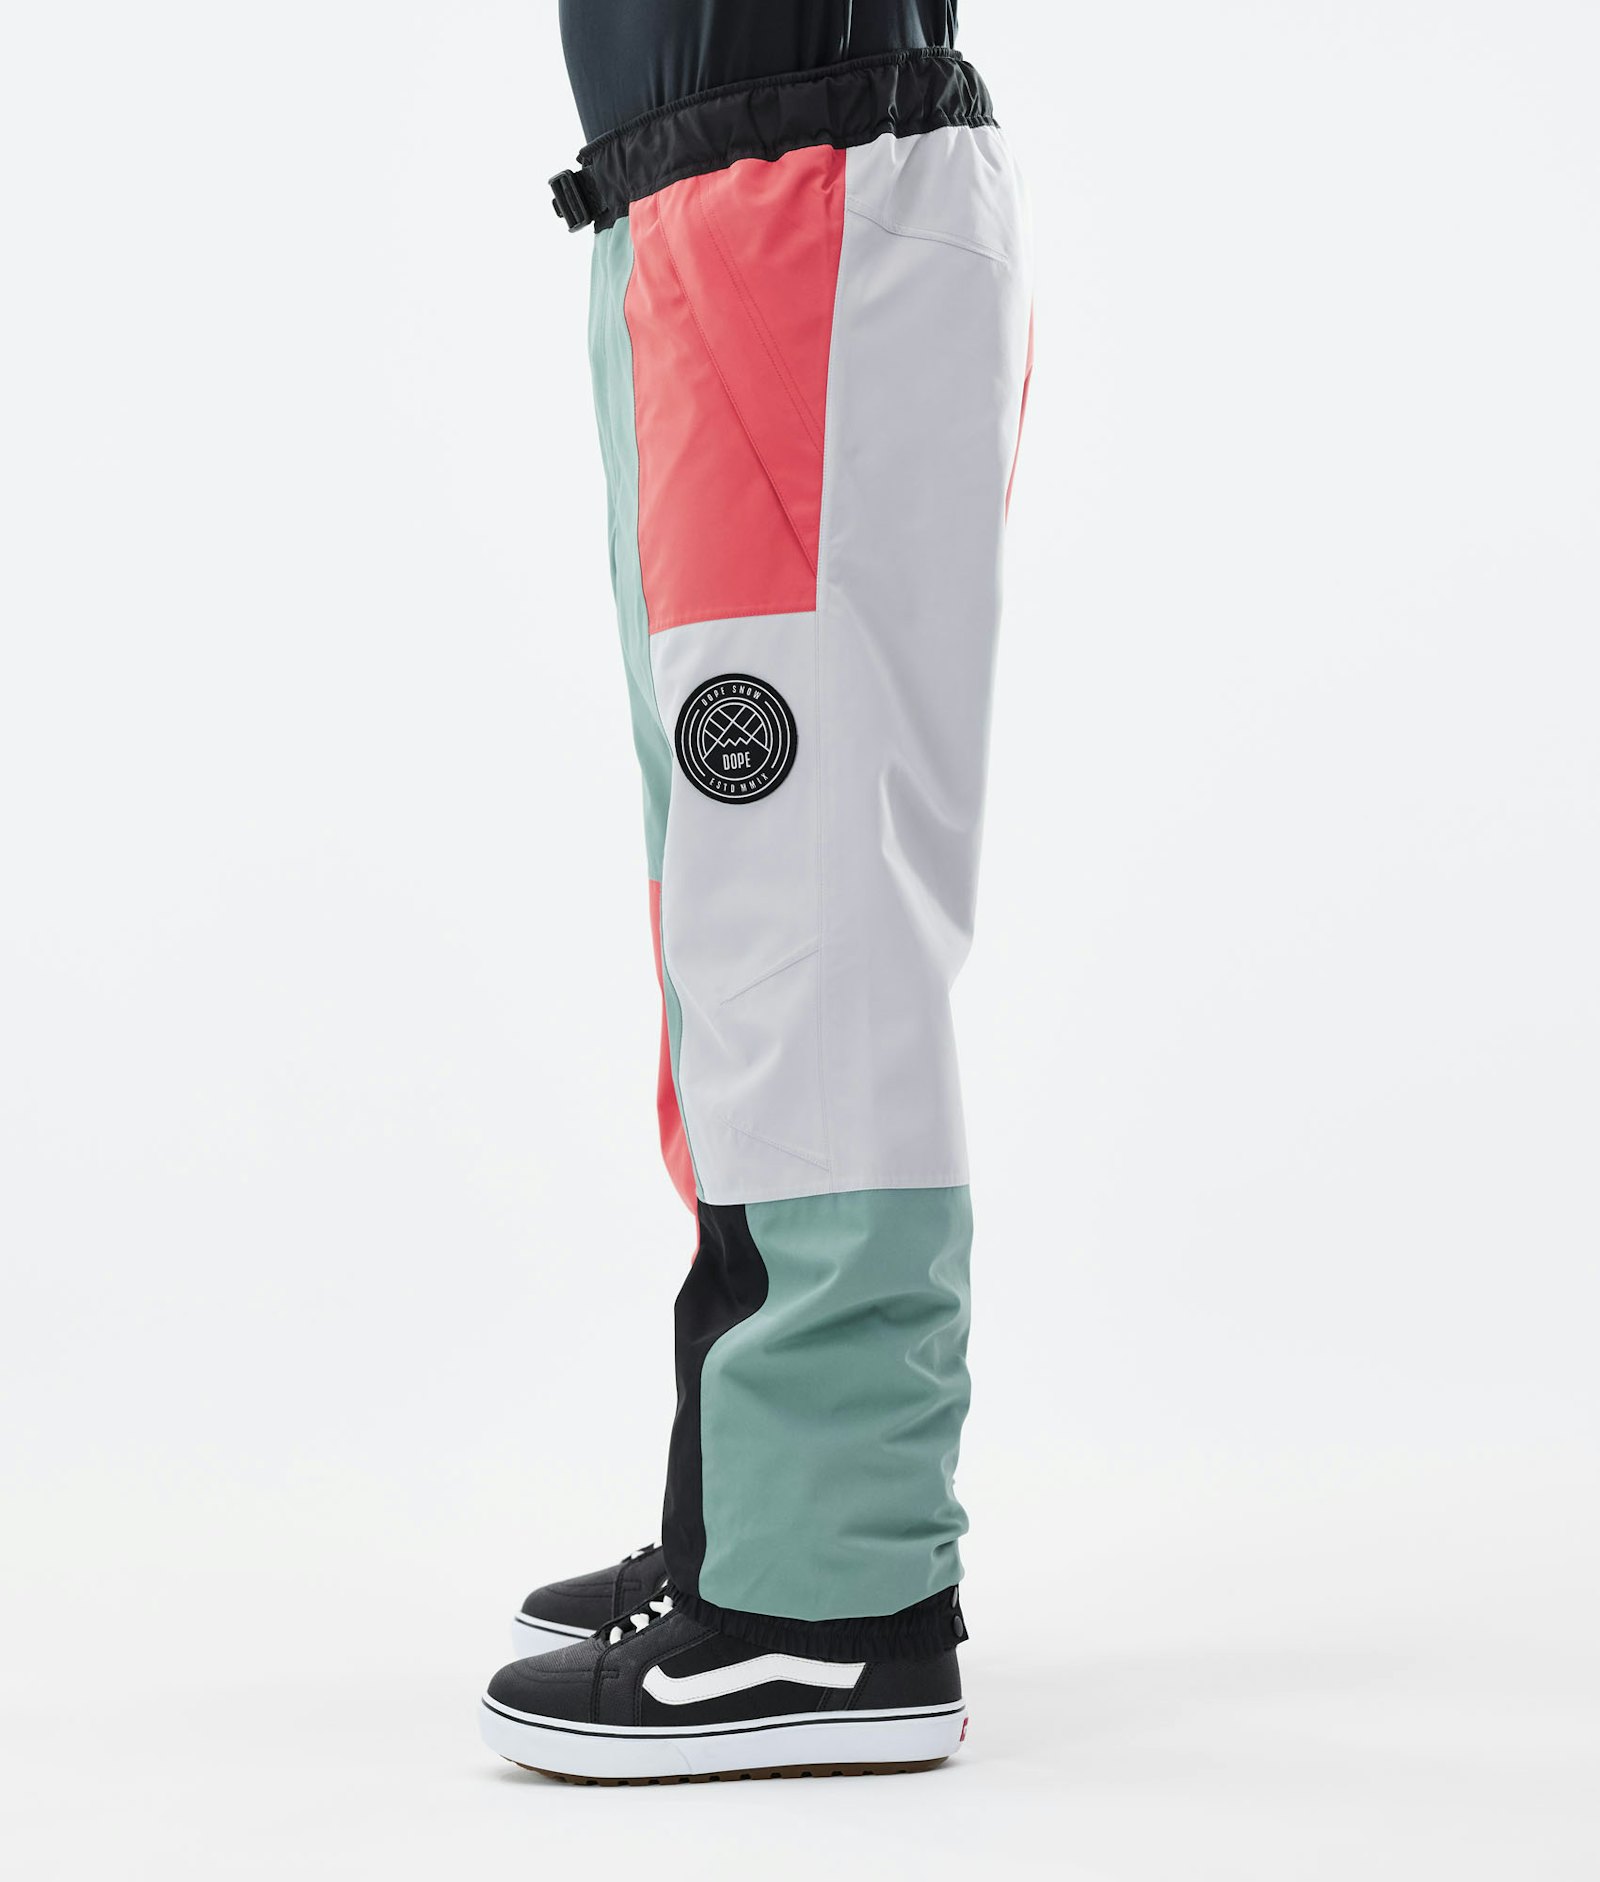 Blizzard LE Pantalon de Snowboard Homme Limited Edition Patchwork Coral